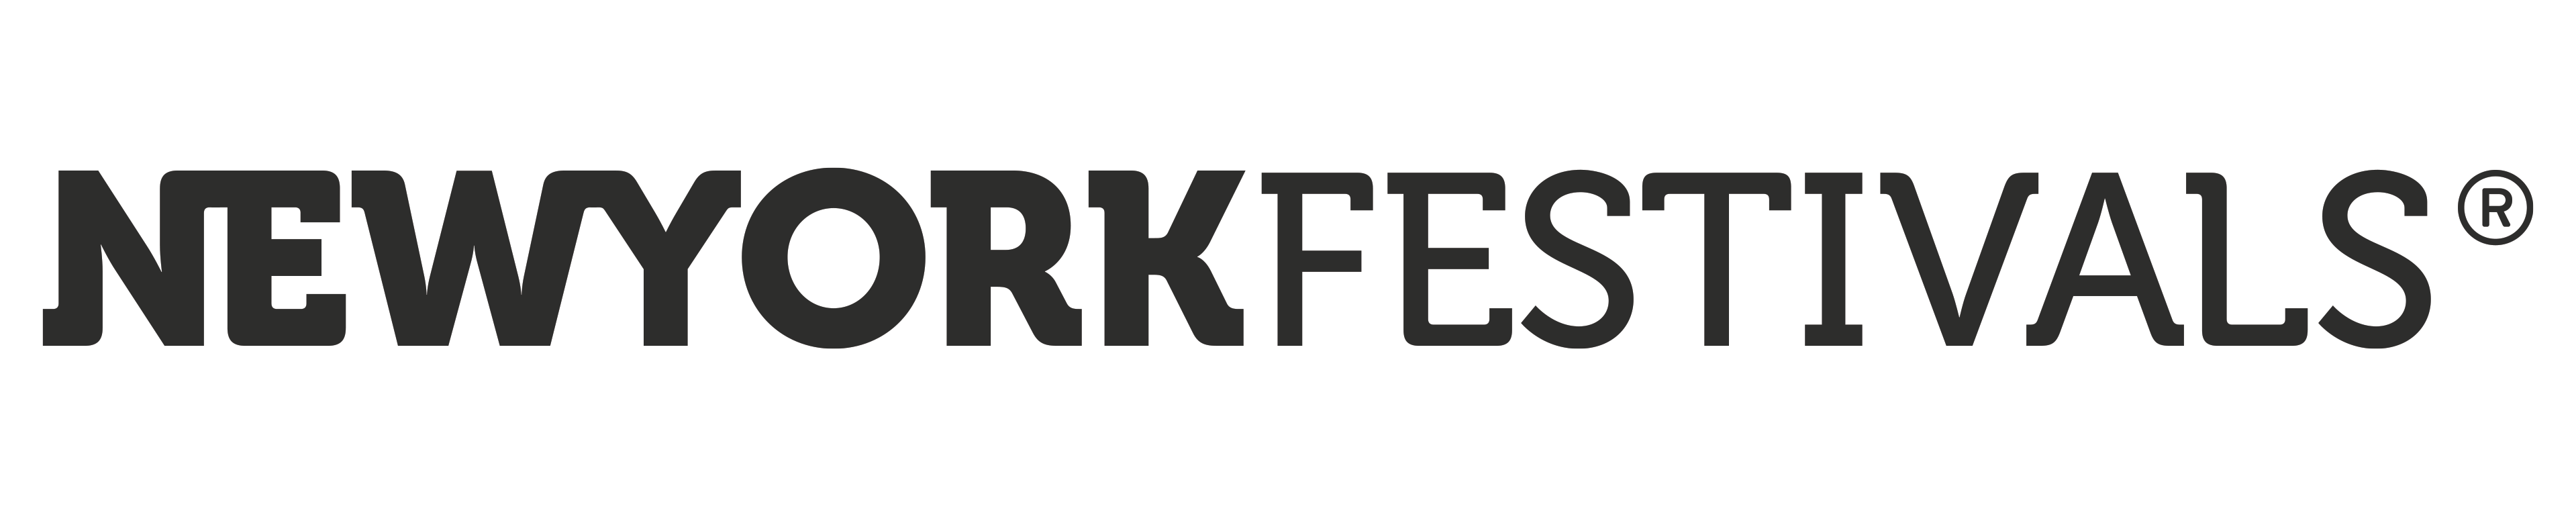 New York Festivals Award Logo